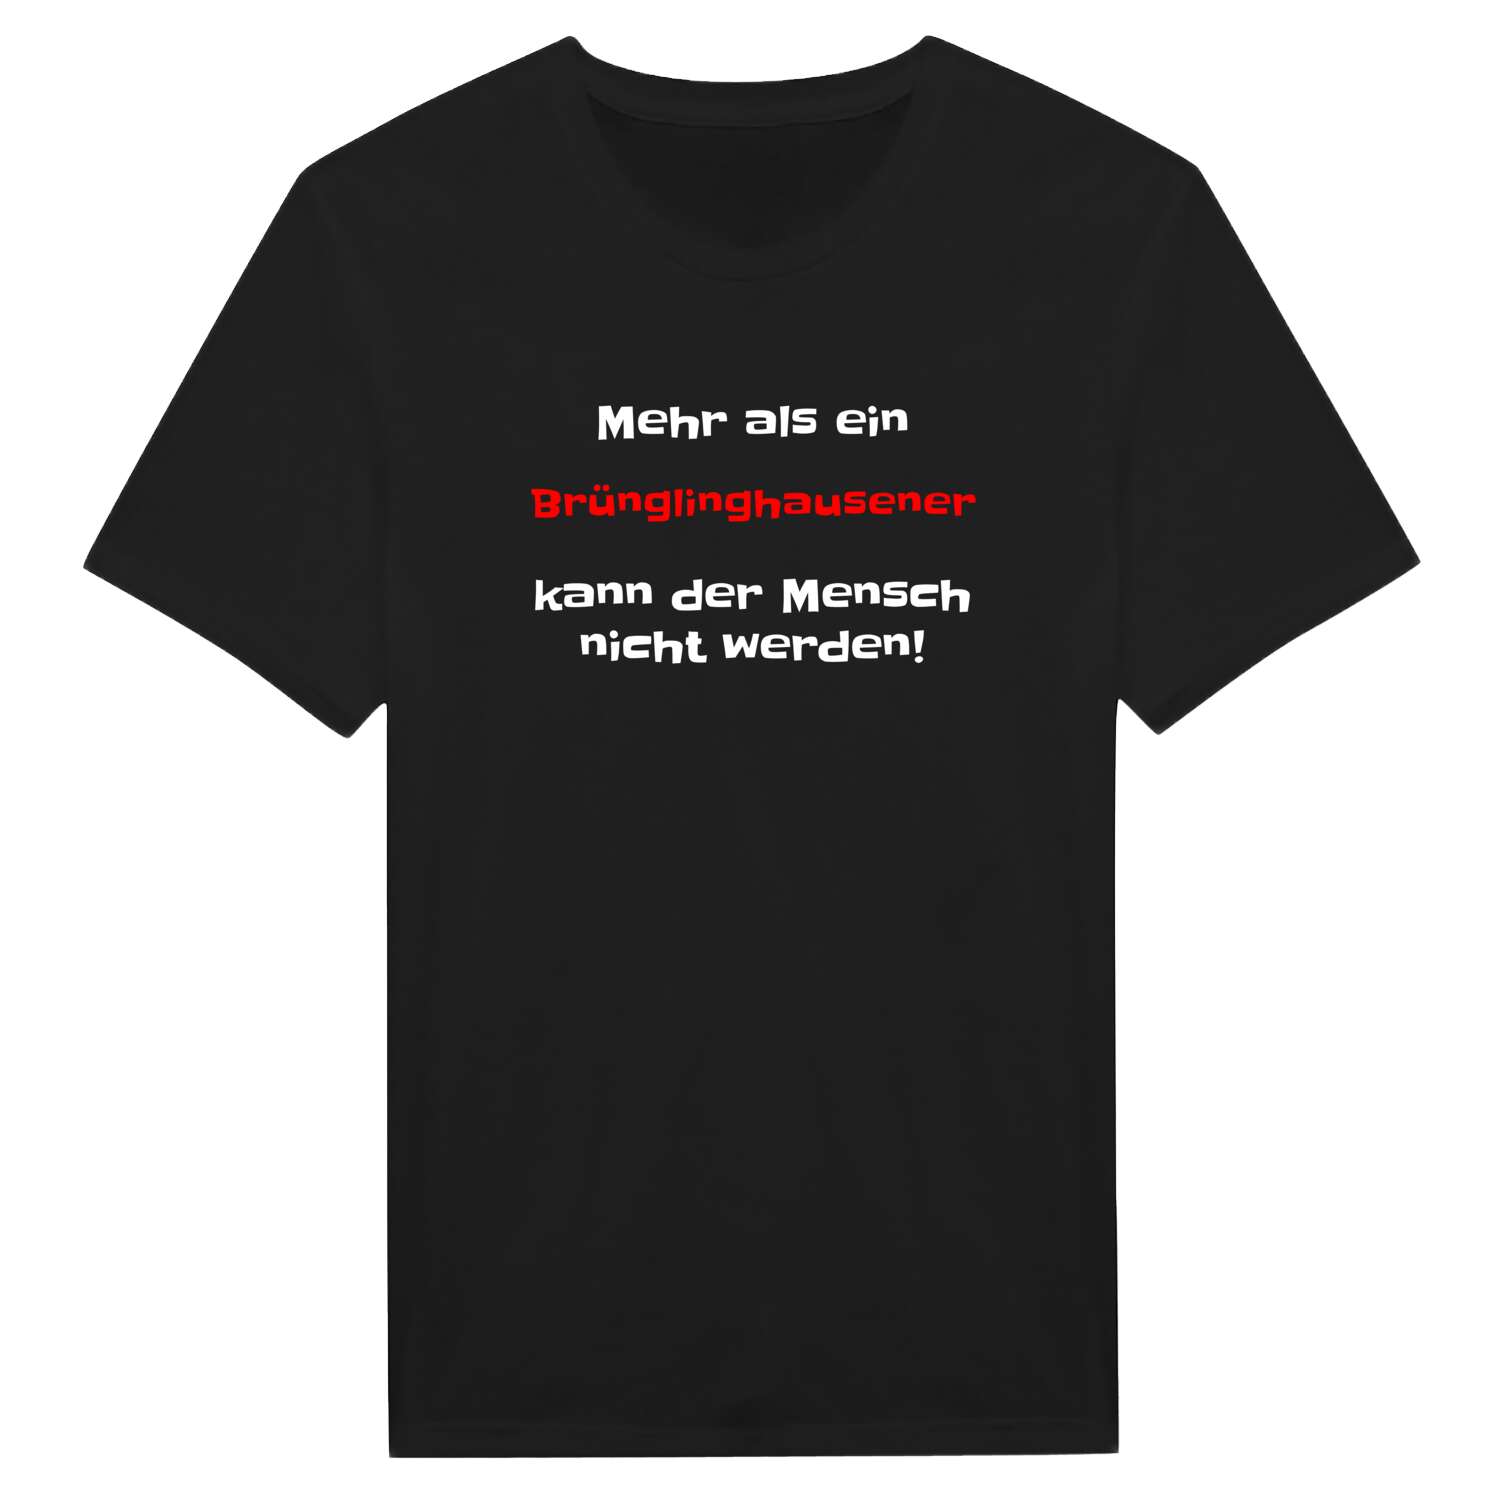 Brünglinghausen T-Shirt »Mehr als ein«